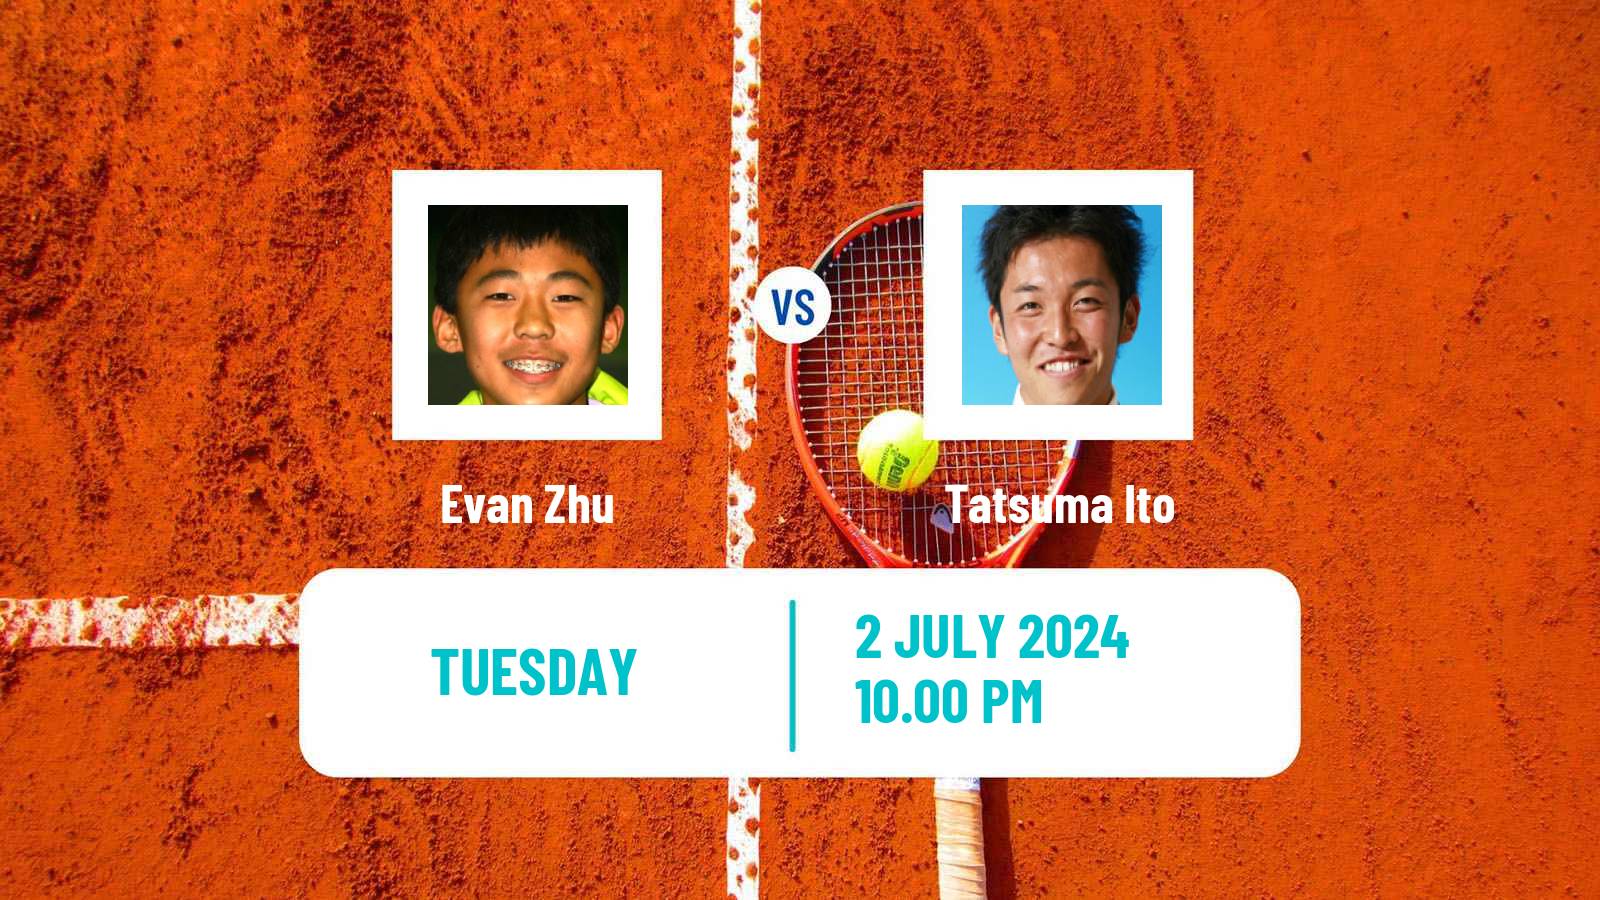 Tennis ITF M15 Tokyo Men Evan Zhu - Tatsuma Ito